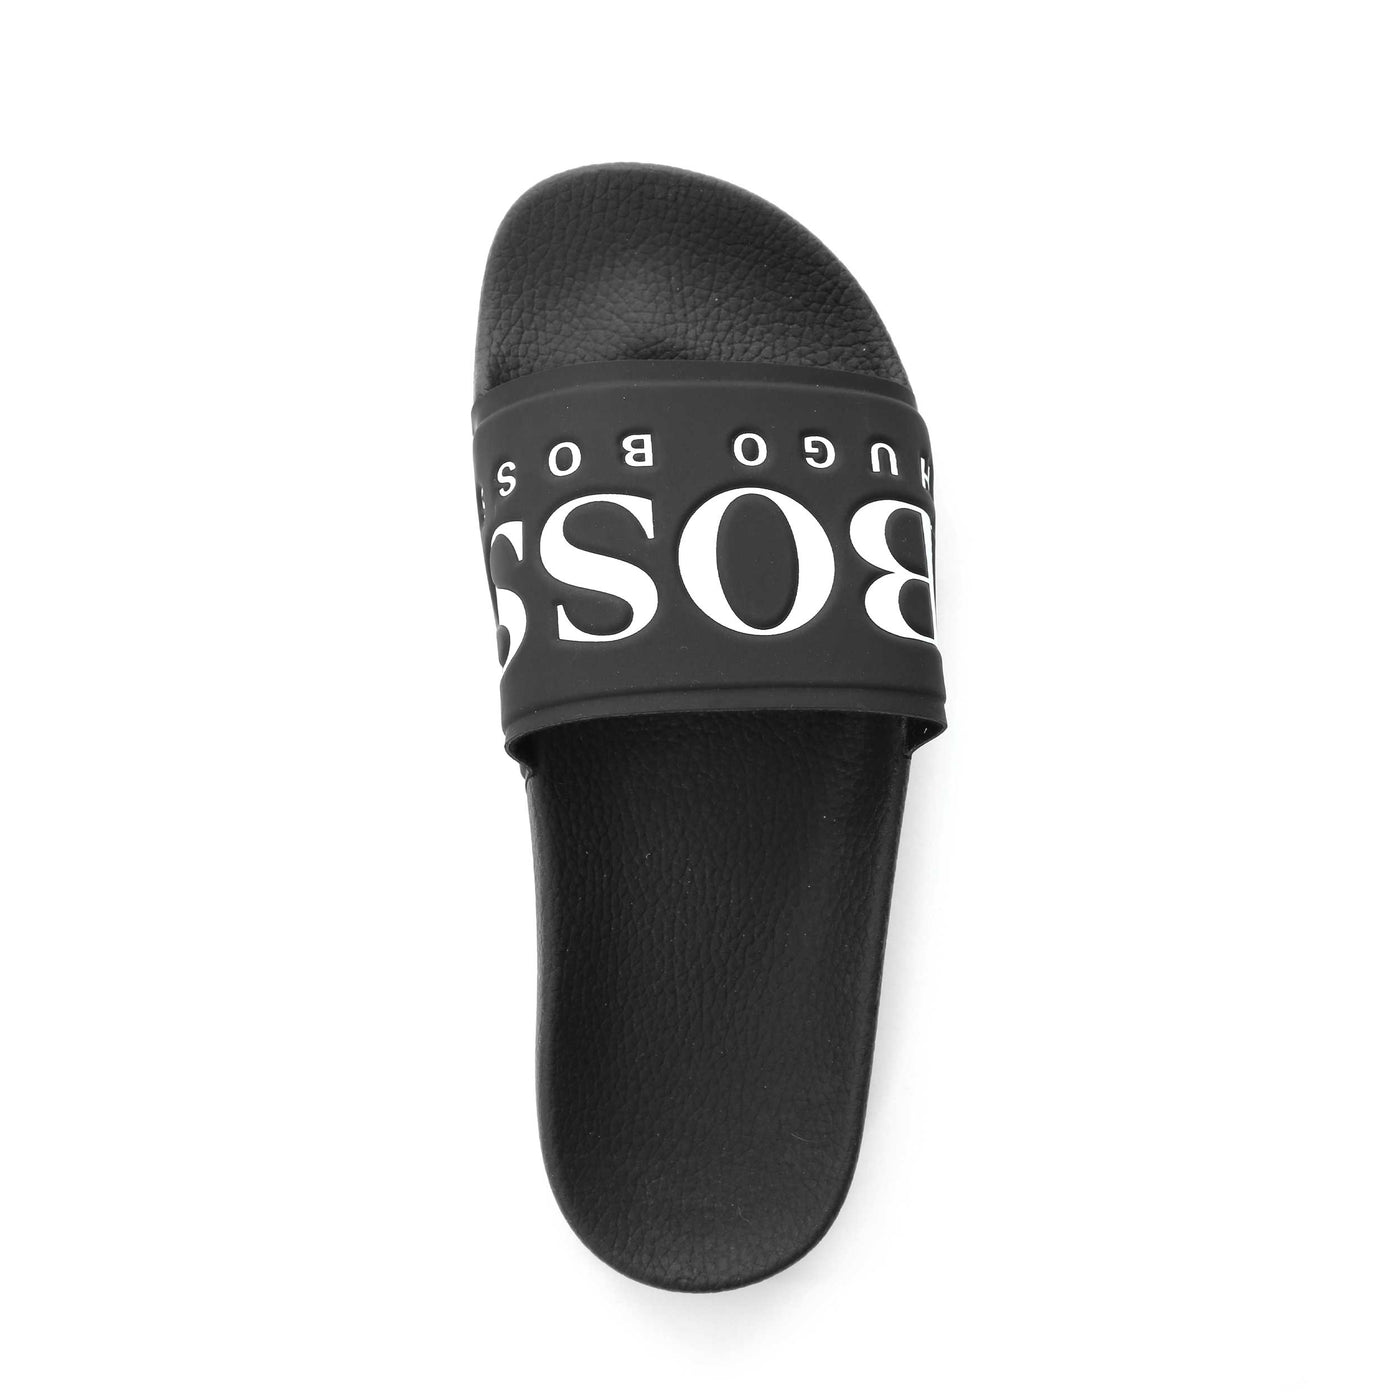 BOSS Solar Slid Logo Sliders in Black & White